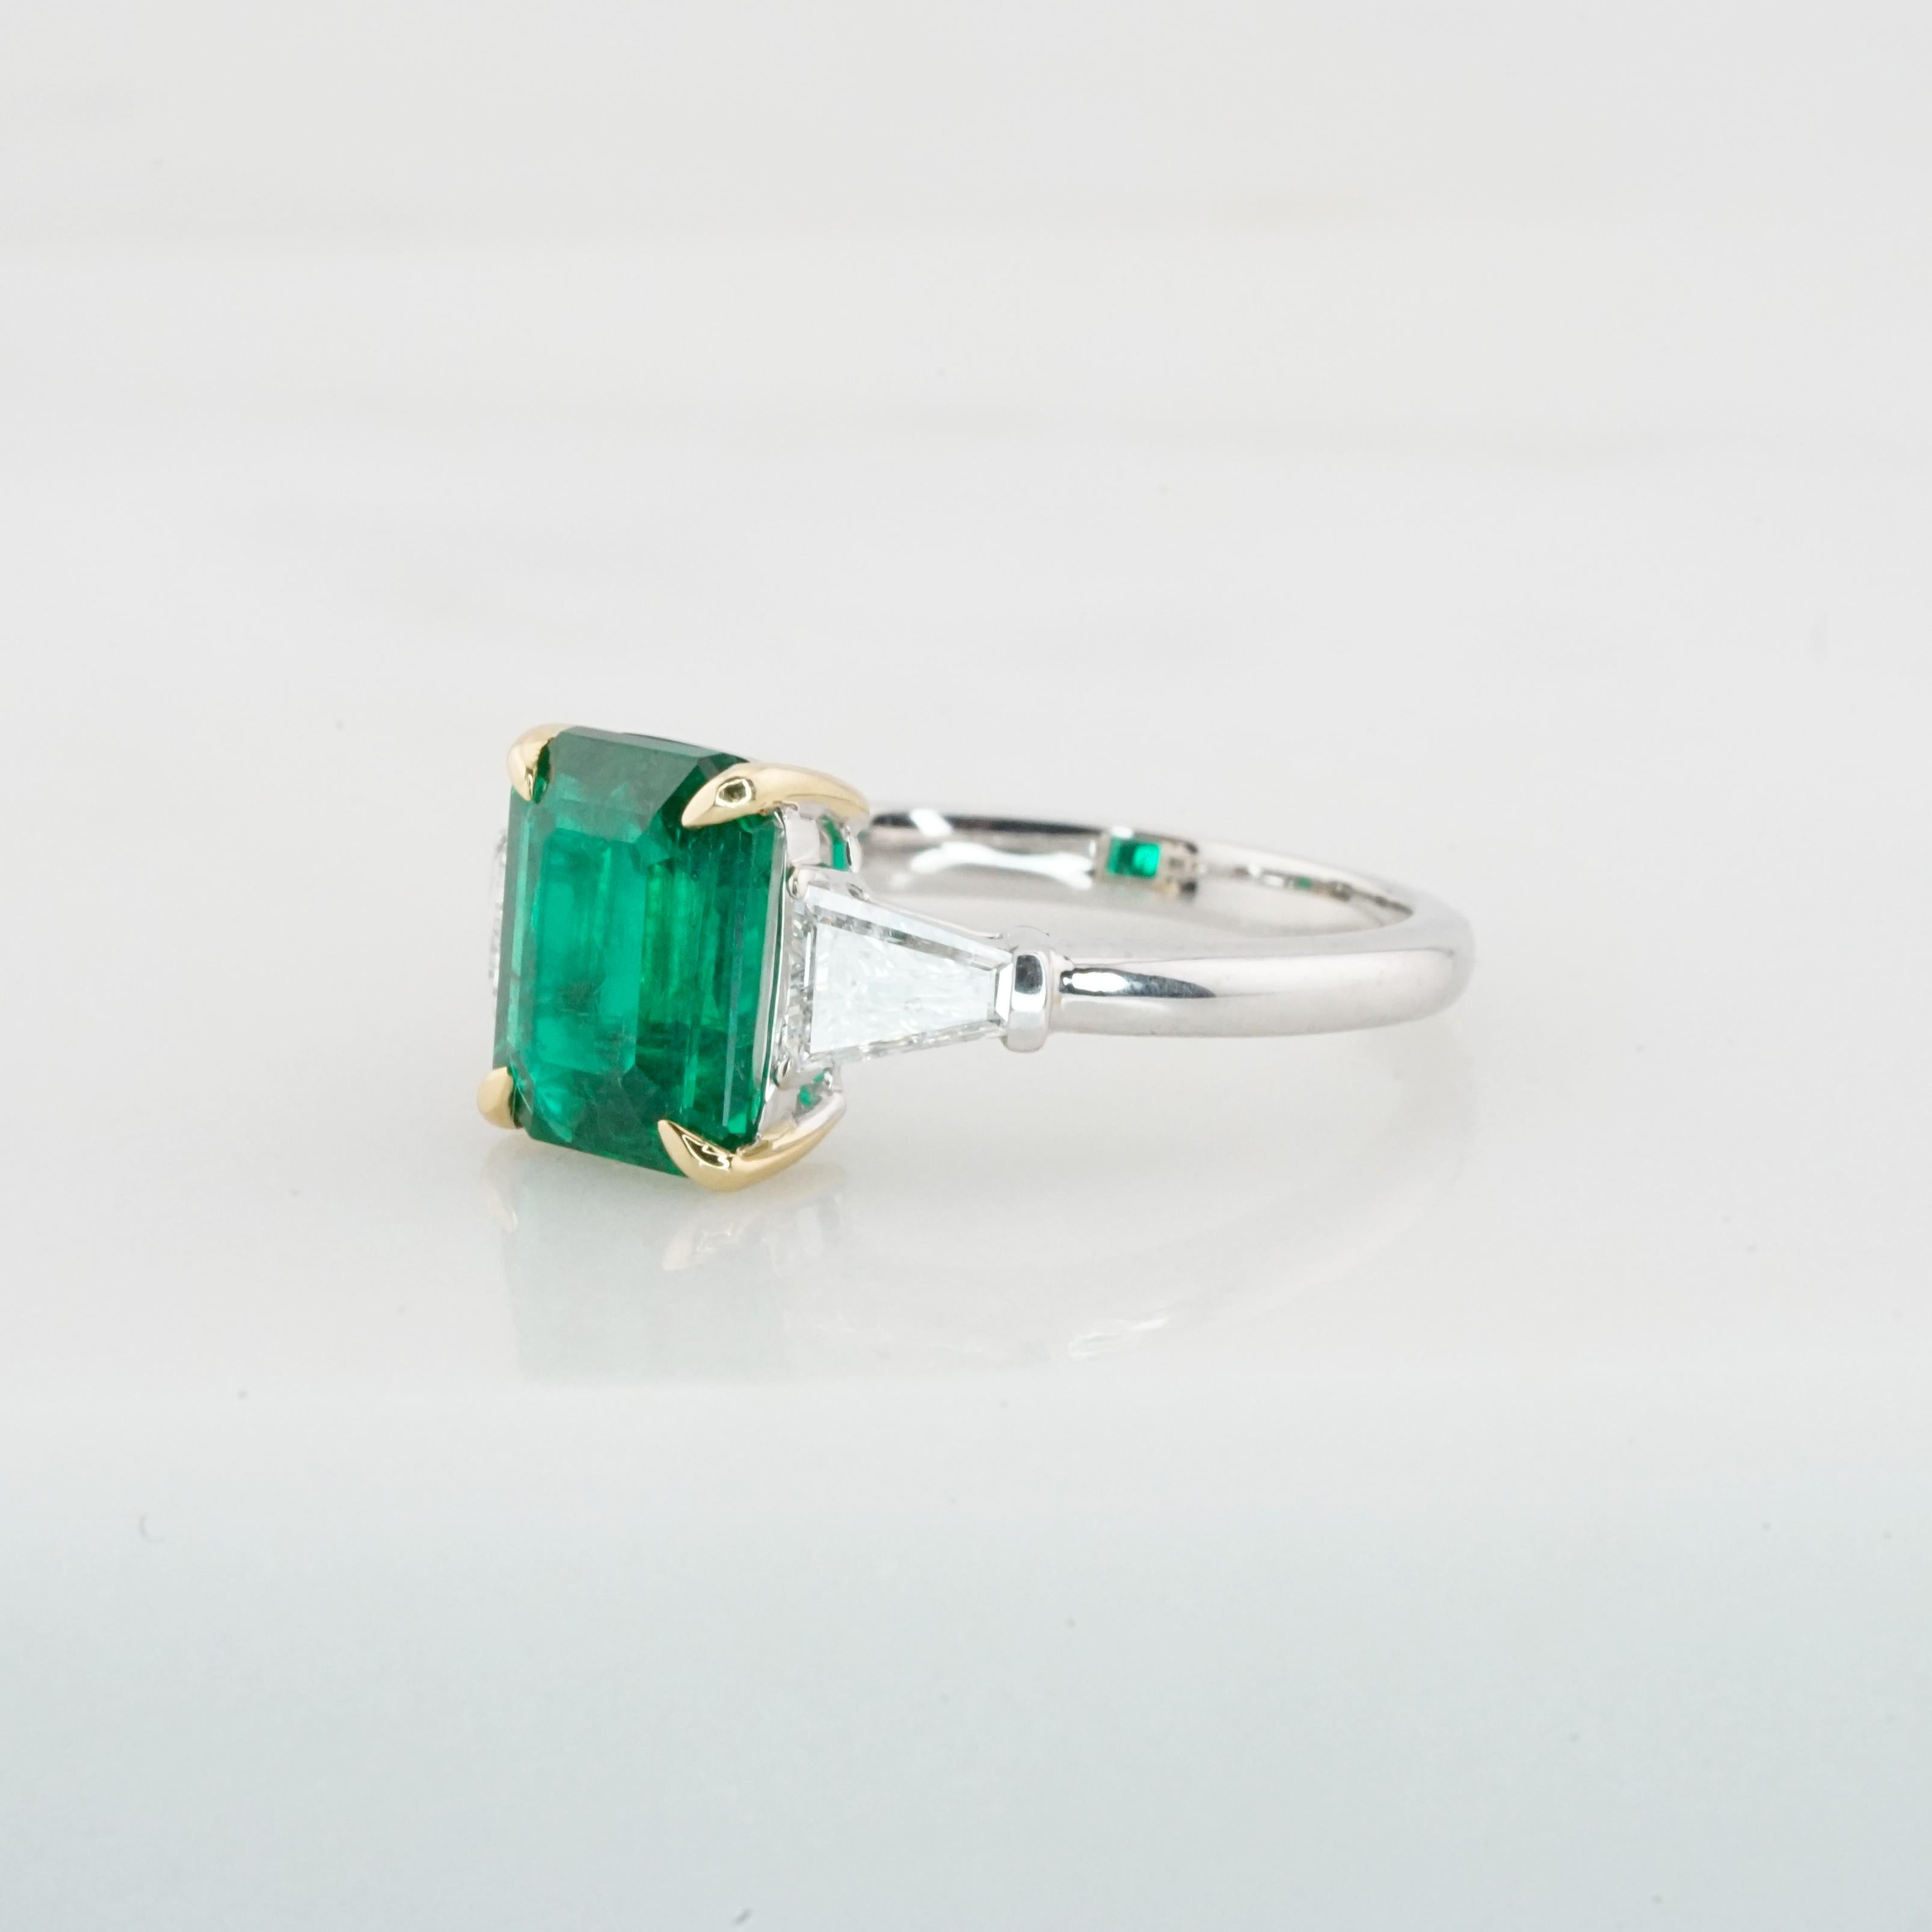 Mit einem GRS-zertifizierten Smaragd von 2,43 Karat ist dieser atemberaubende Ring eine Verkörperung von Luxus und der Kunstfertigkeit der Natur. Der Smaragd, der aus dem majestätischen Himalaya-Gebirge stammt, hat einen tiefgrünen Farbton, der an